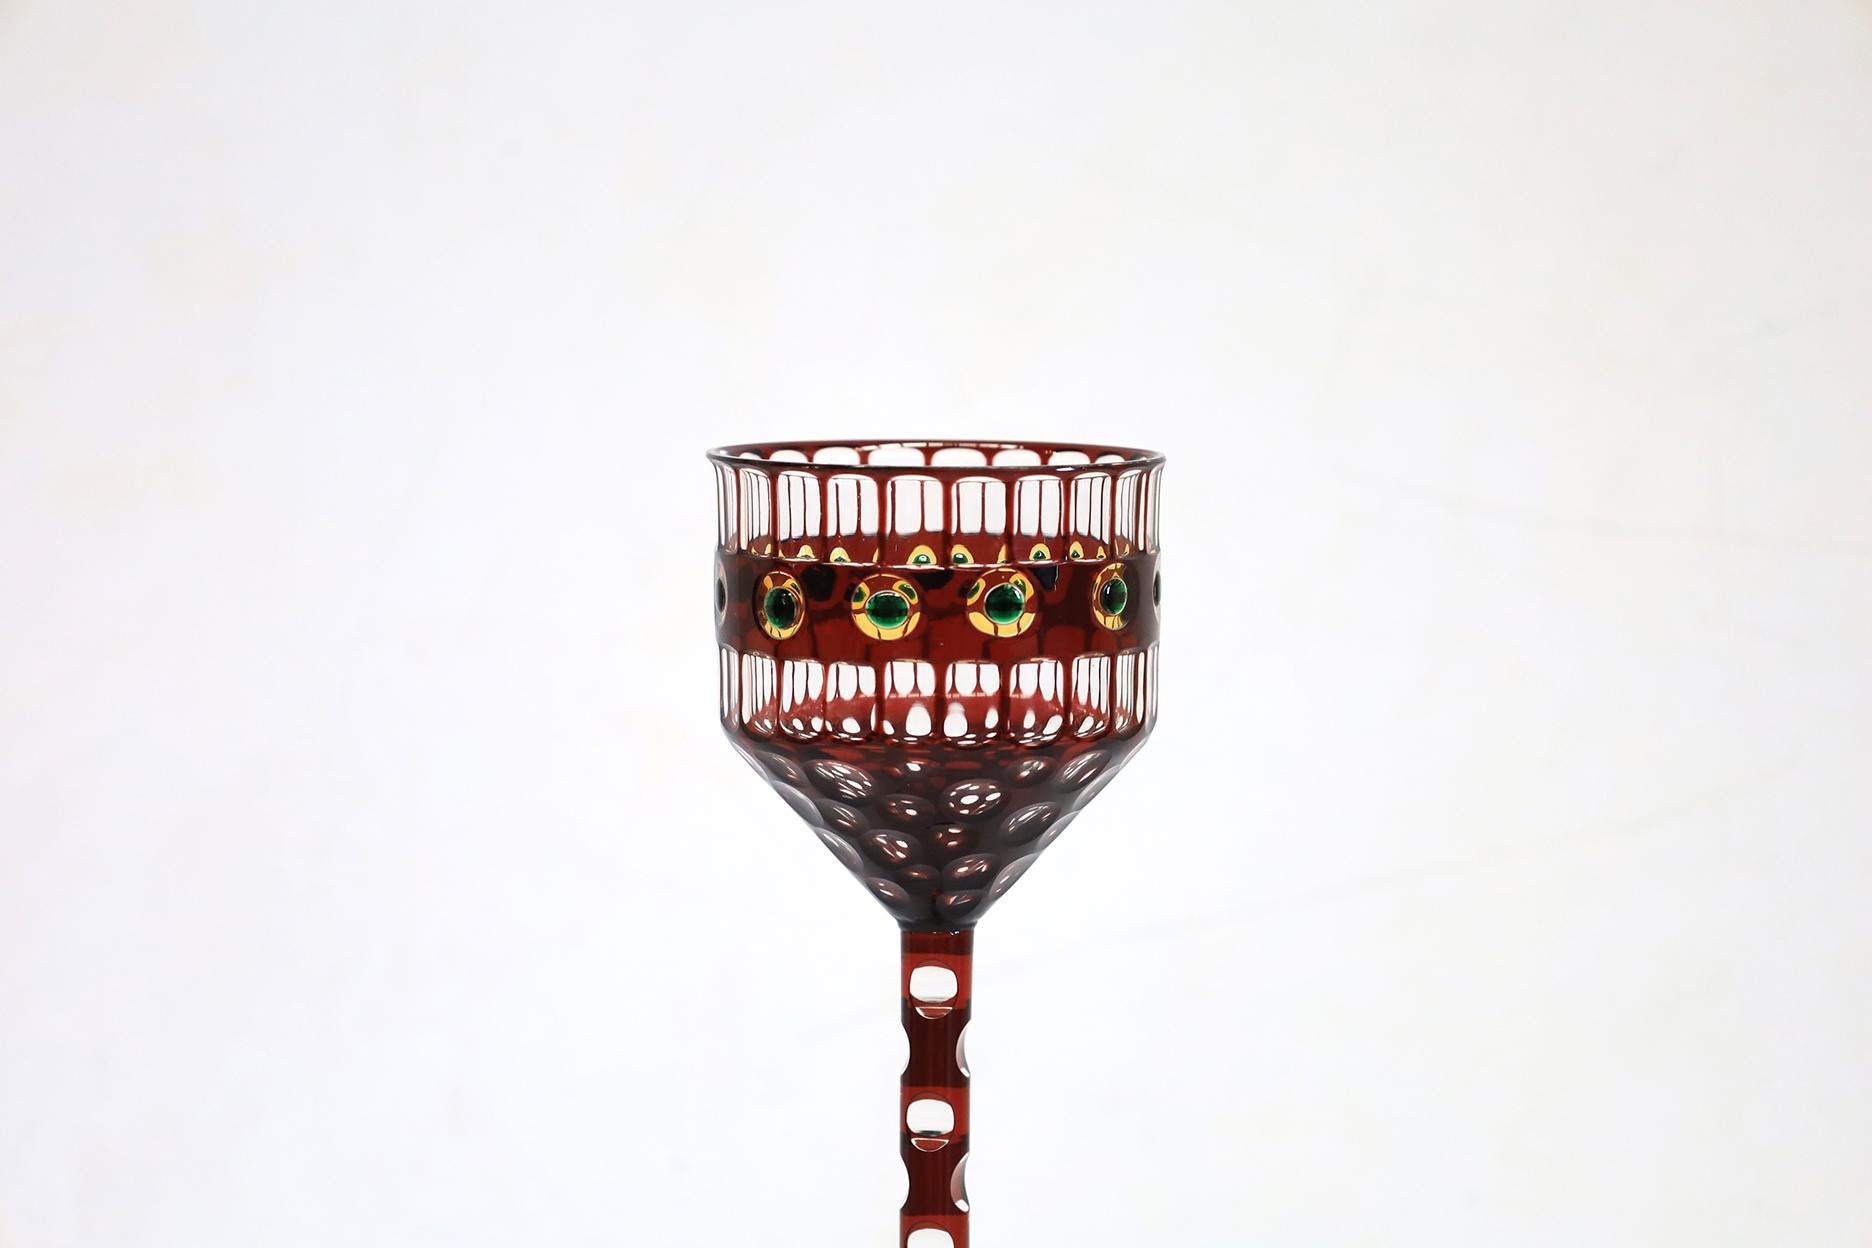 Extraordinaire verre à boire de collection en parfait état attribué à Otto Prutscher.
Fabriqué en 1906 par Meyr's Neffe à Vienne en Autriche.
Ce design fait aujourd'hui partie de la collection permanente de la  Musée des arts appliqués en Autriche